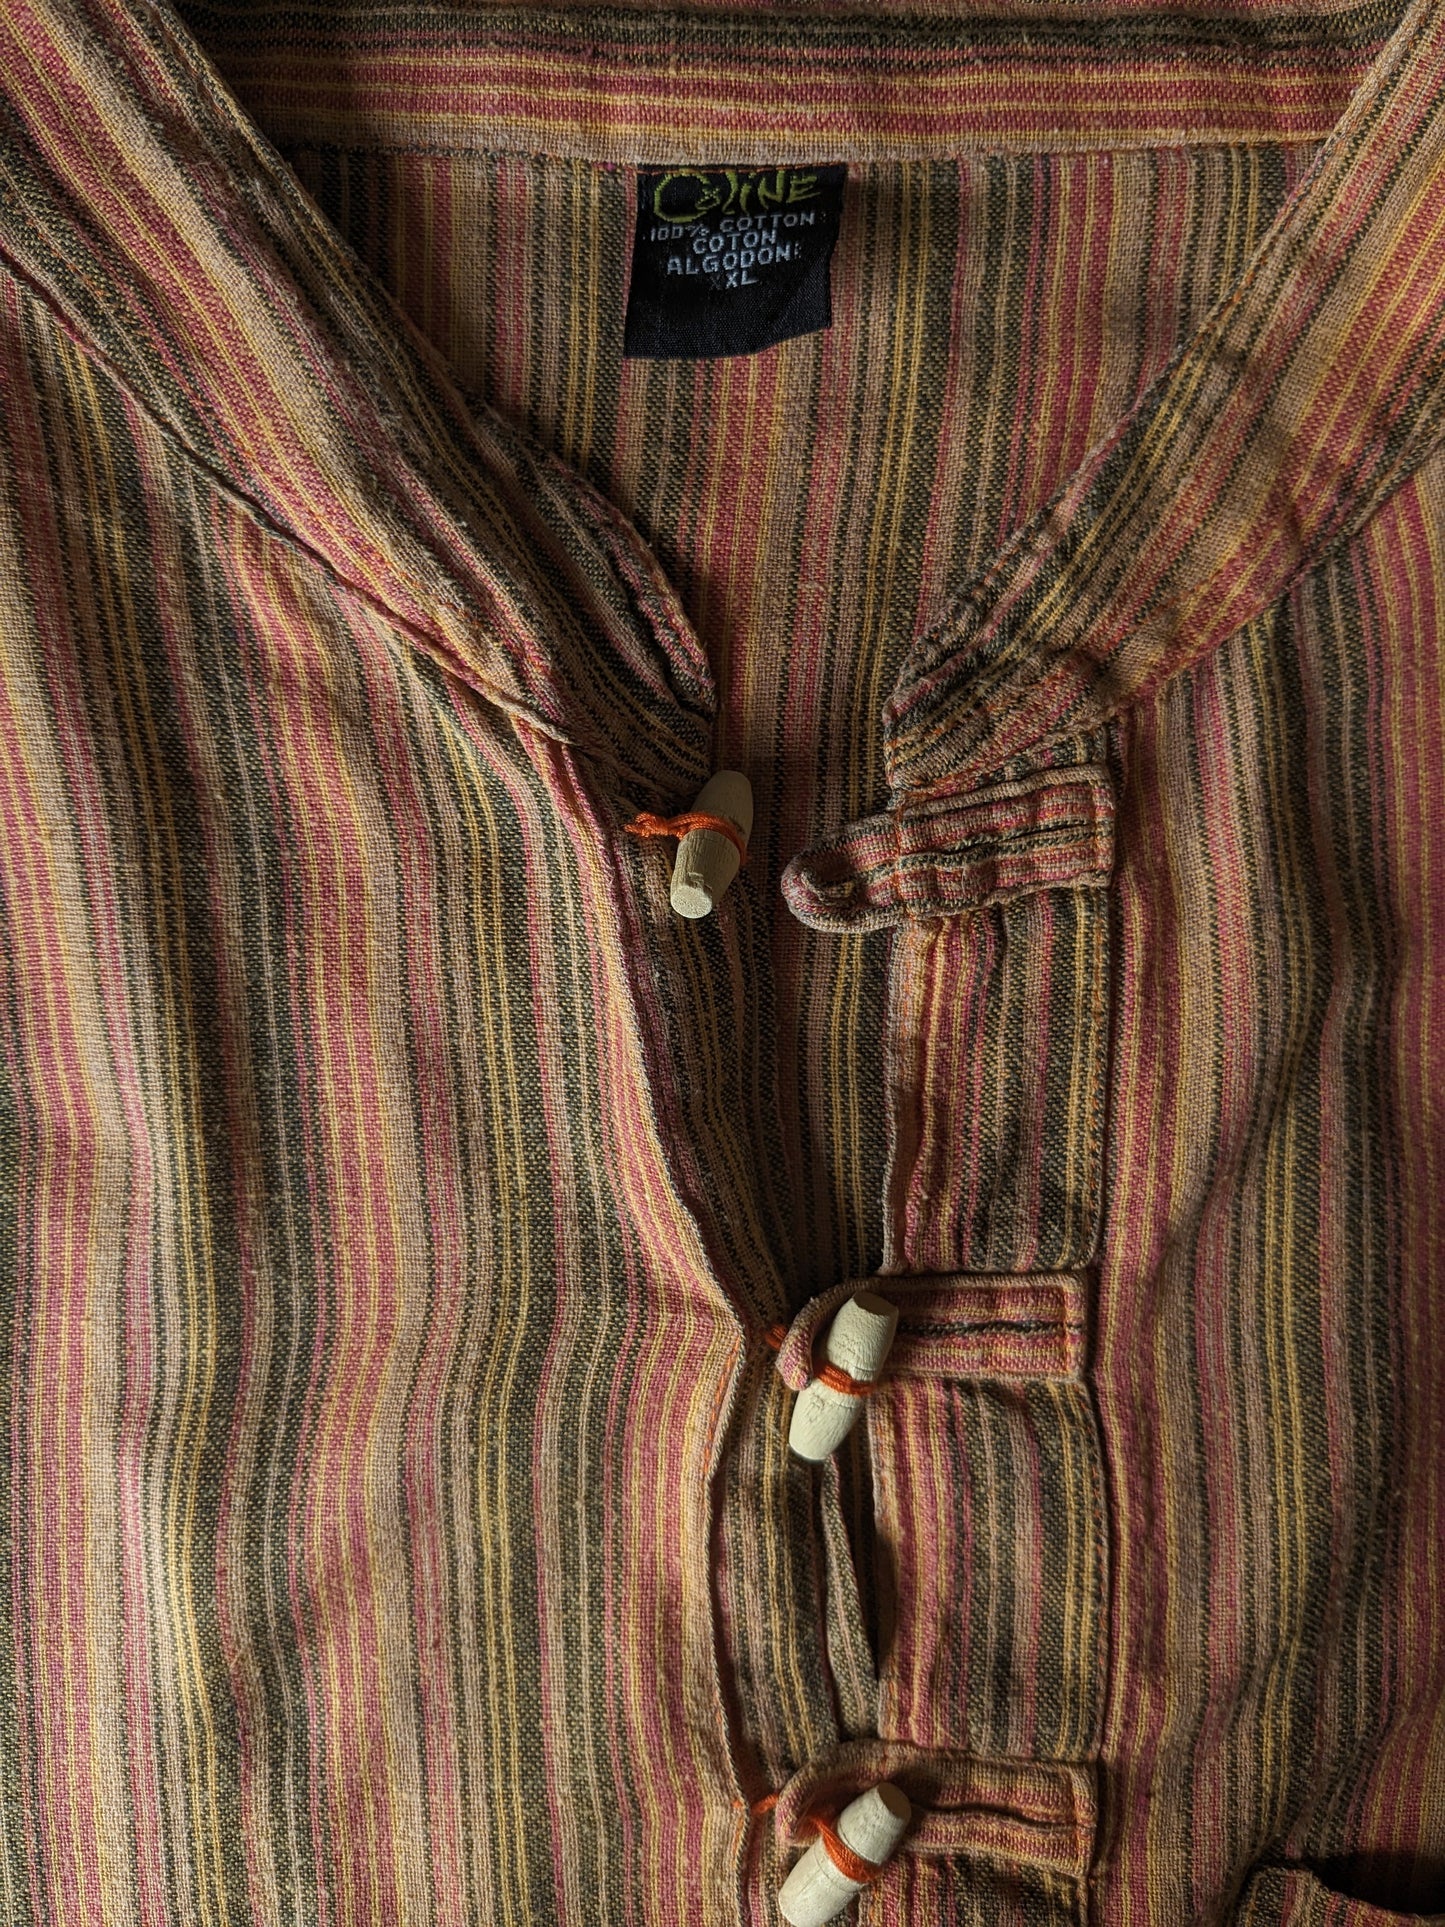 Camisa de colina vintage con mao / agricultor / cuello de pie. Naranja rojo amarillo negro rayado. Tamaño xl.